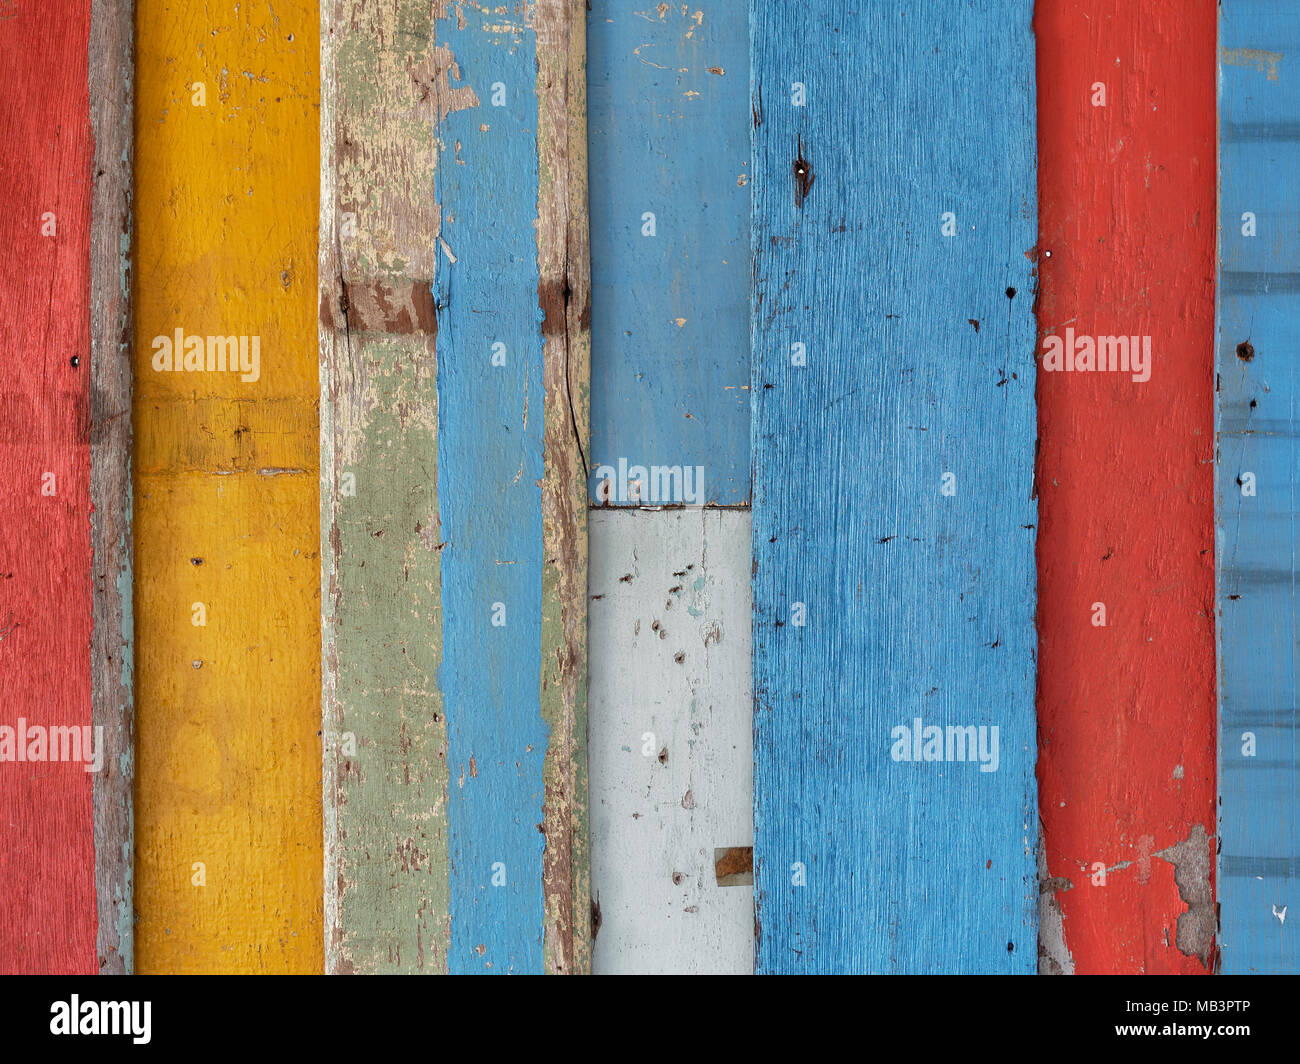 La surface du mur en bois étape colorées peintes en rouge, jaune, bleu, et marron en style rétro, vintage et utilisé comme arrière-plan Banque D'Images